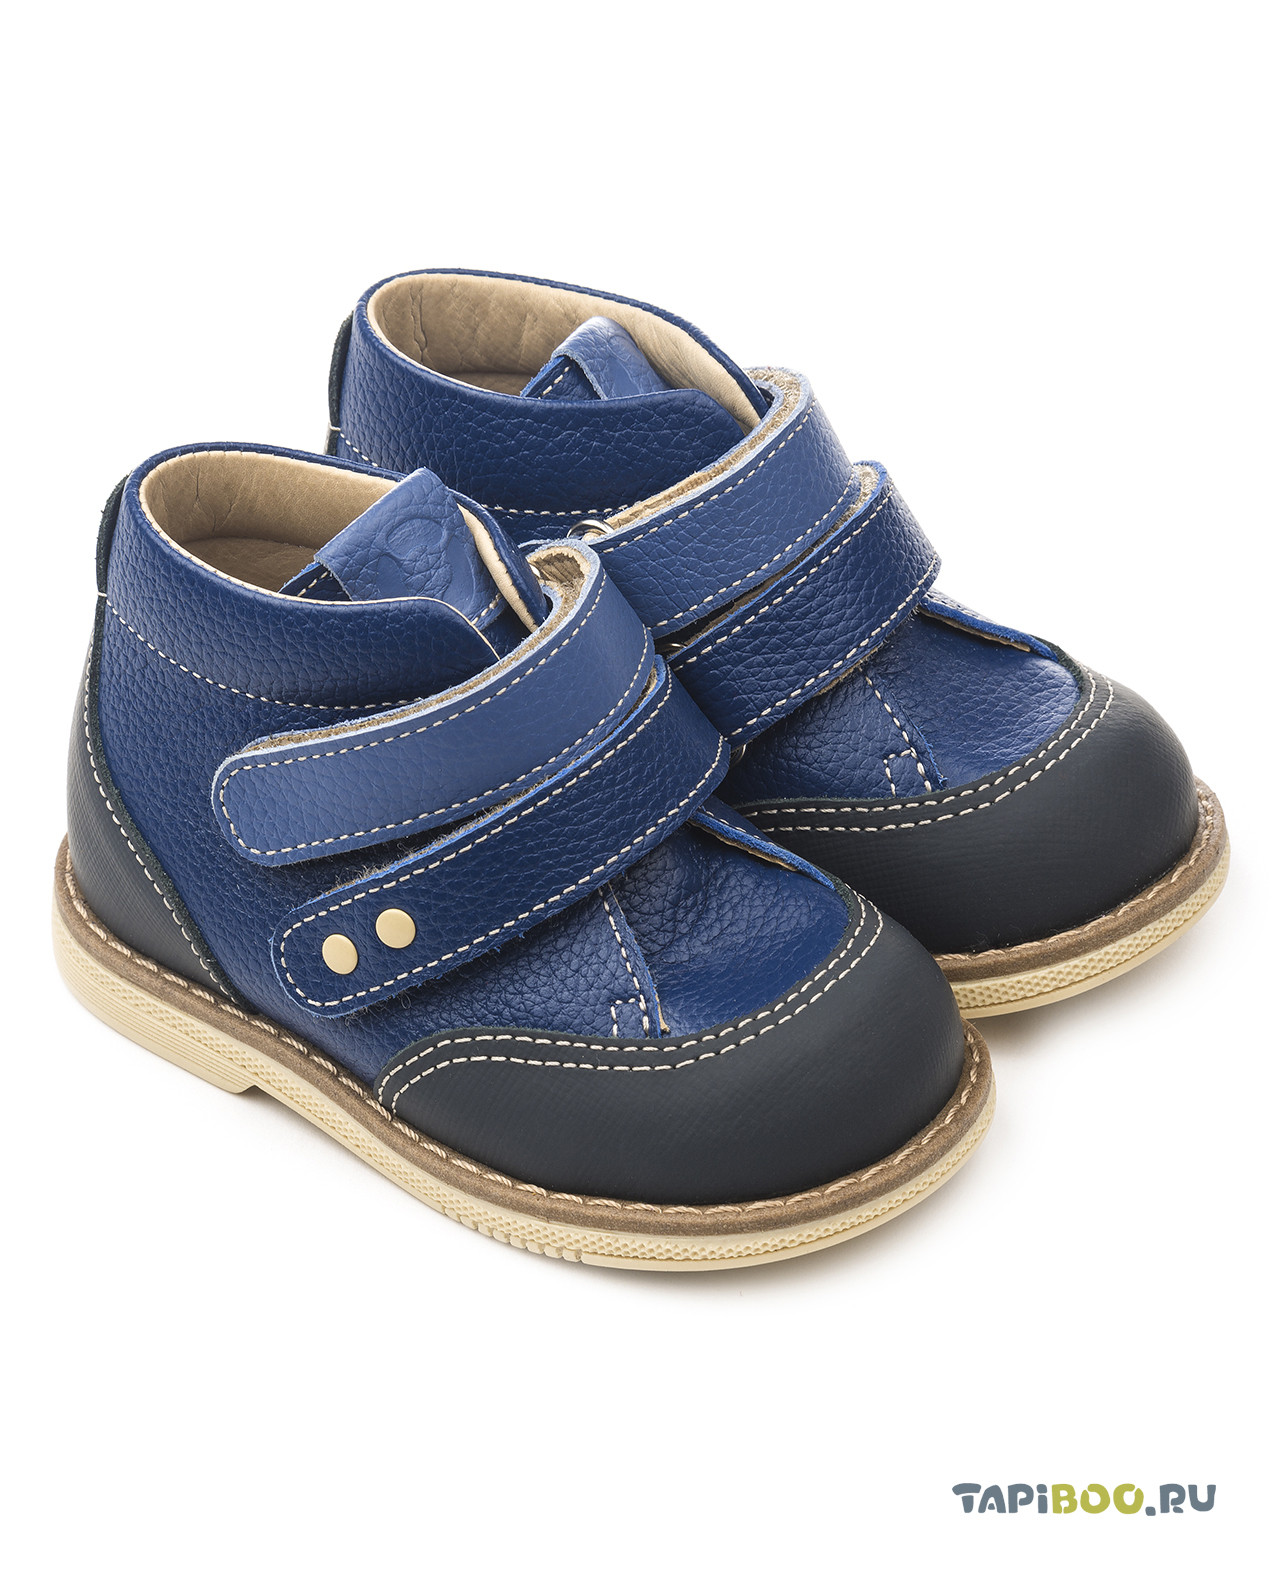 Ботинки детские Tapiboo ВАСИЛЁК синий (73076, 25) ботинки детские tapiboo василёк серый 71699 21